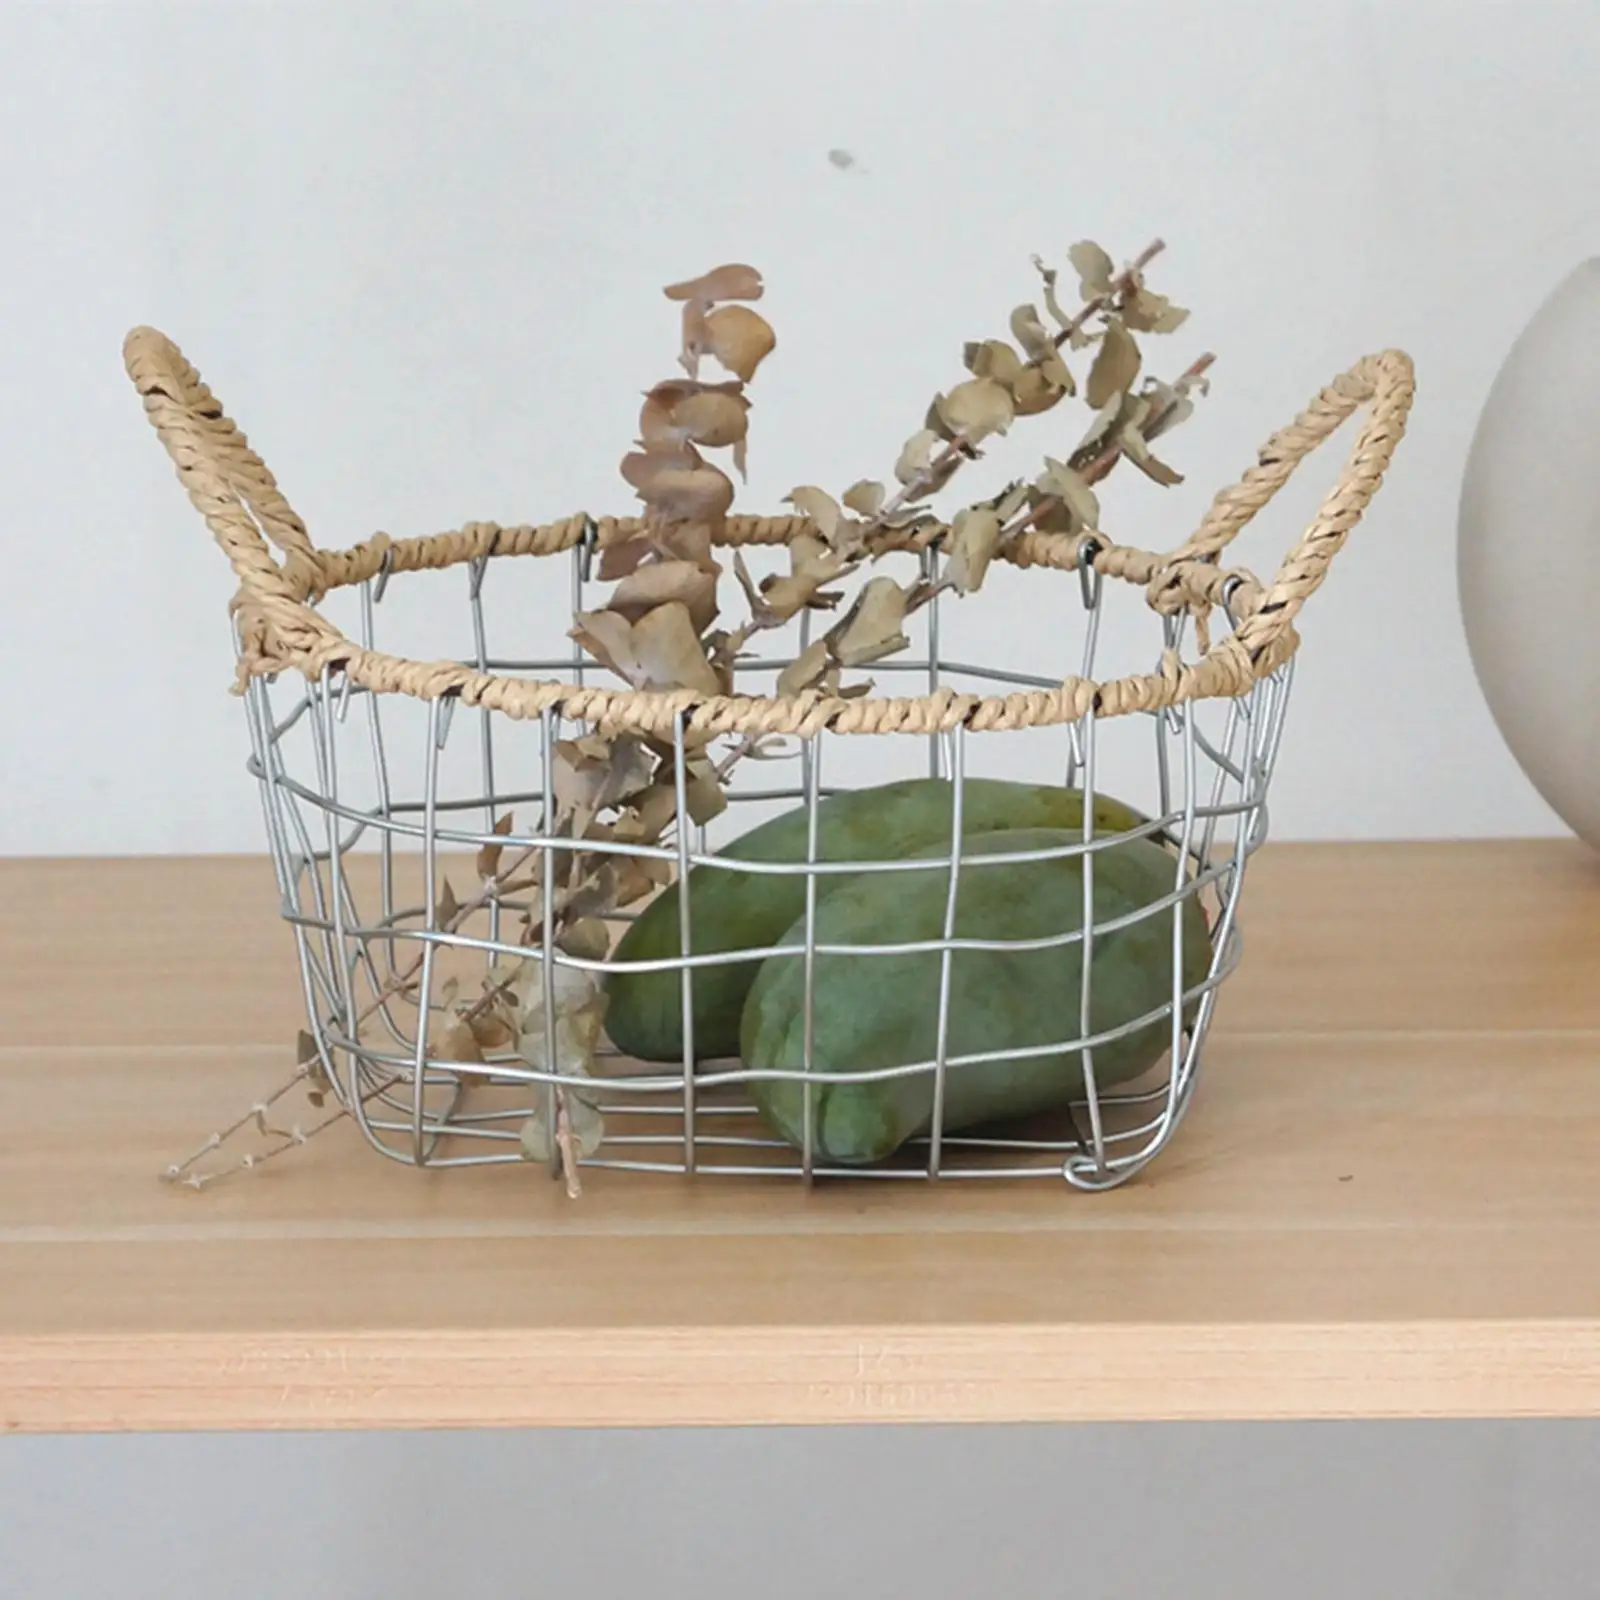 Egg Basket Fruit and Vegetable Basket for Bathroom Kitchen Counter Cabinet